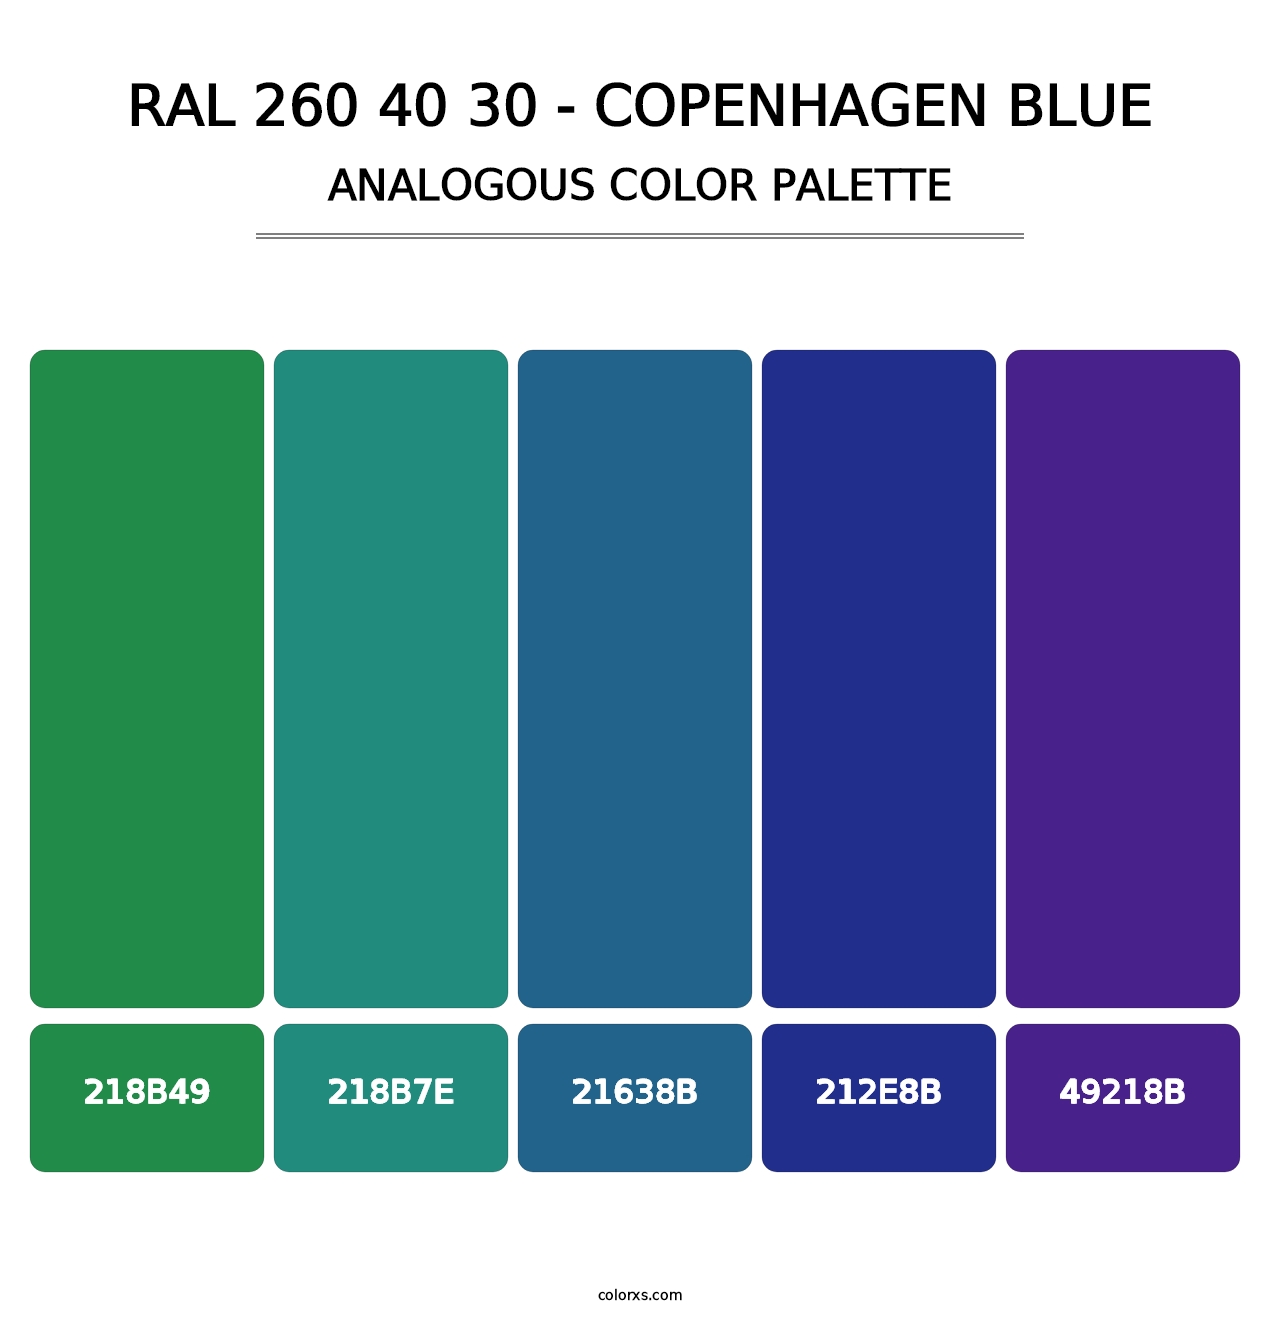 RAL 260 40 30 - Copenhagen Blue - Analogous Color Palette